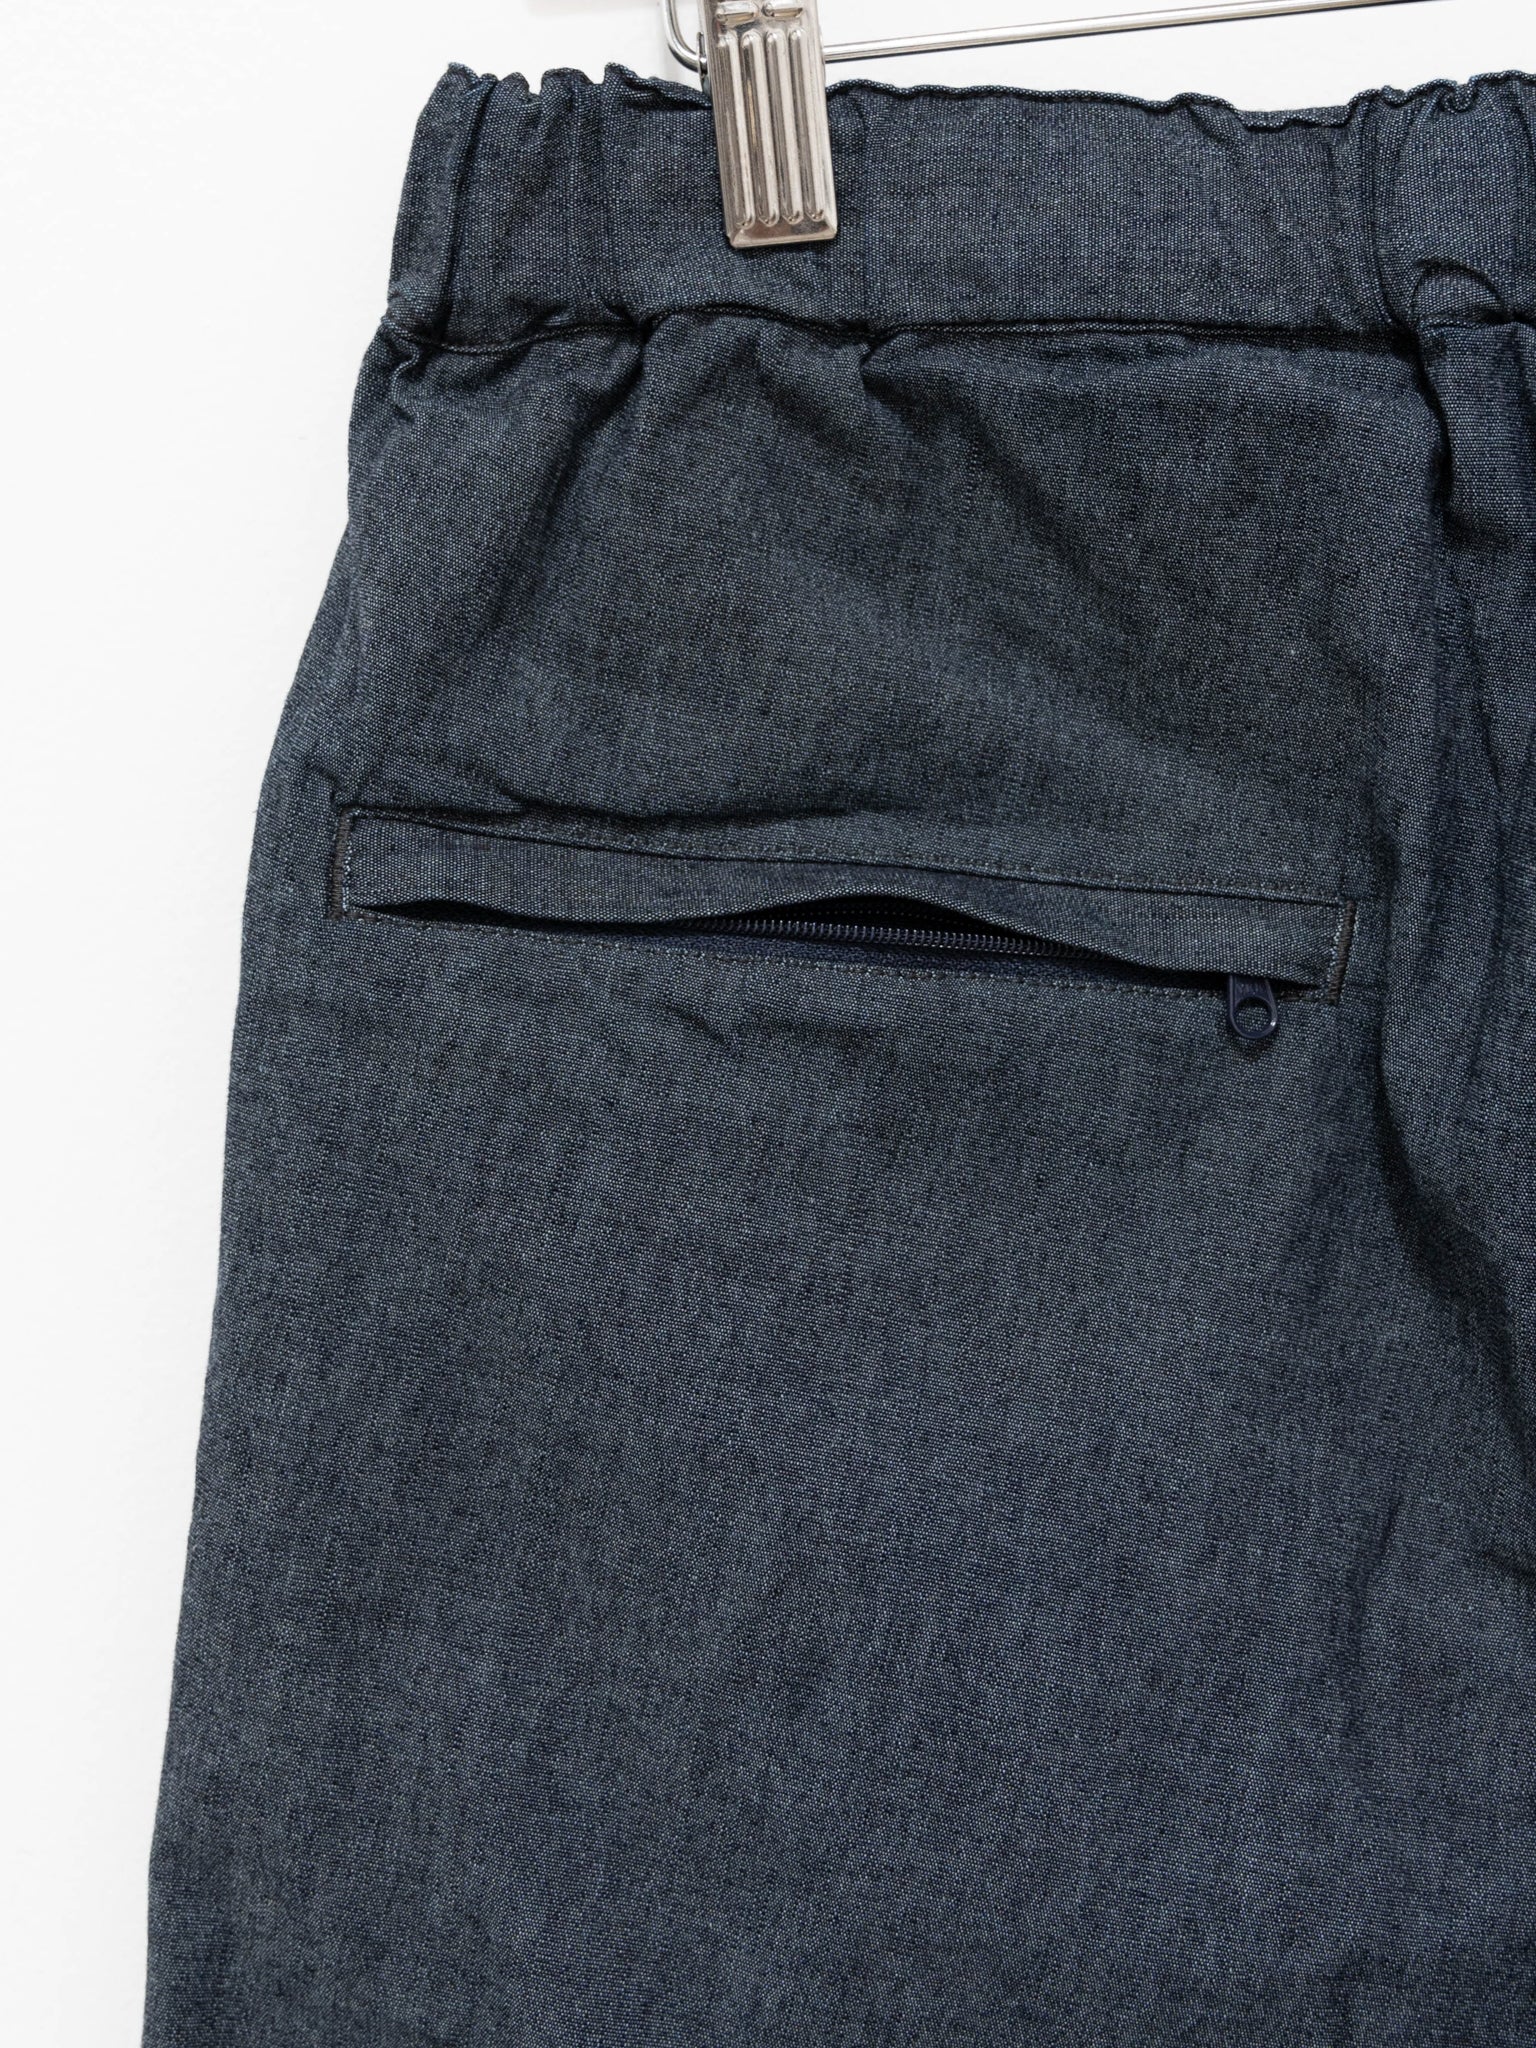 Namu Shop - Fujito N.O.UN Denim Trousers - Indigo Blue